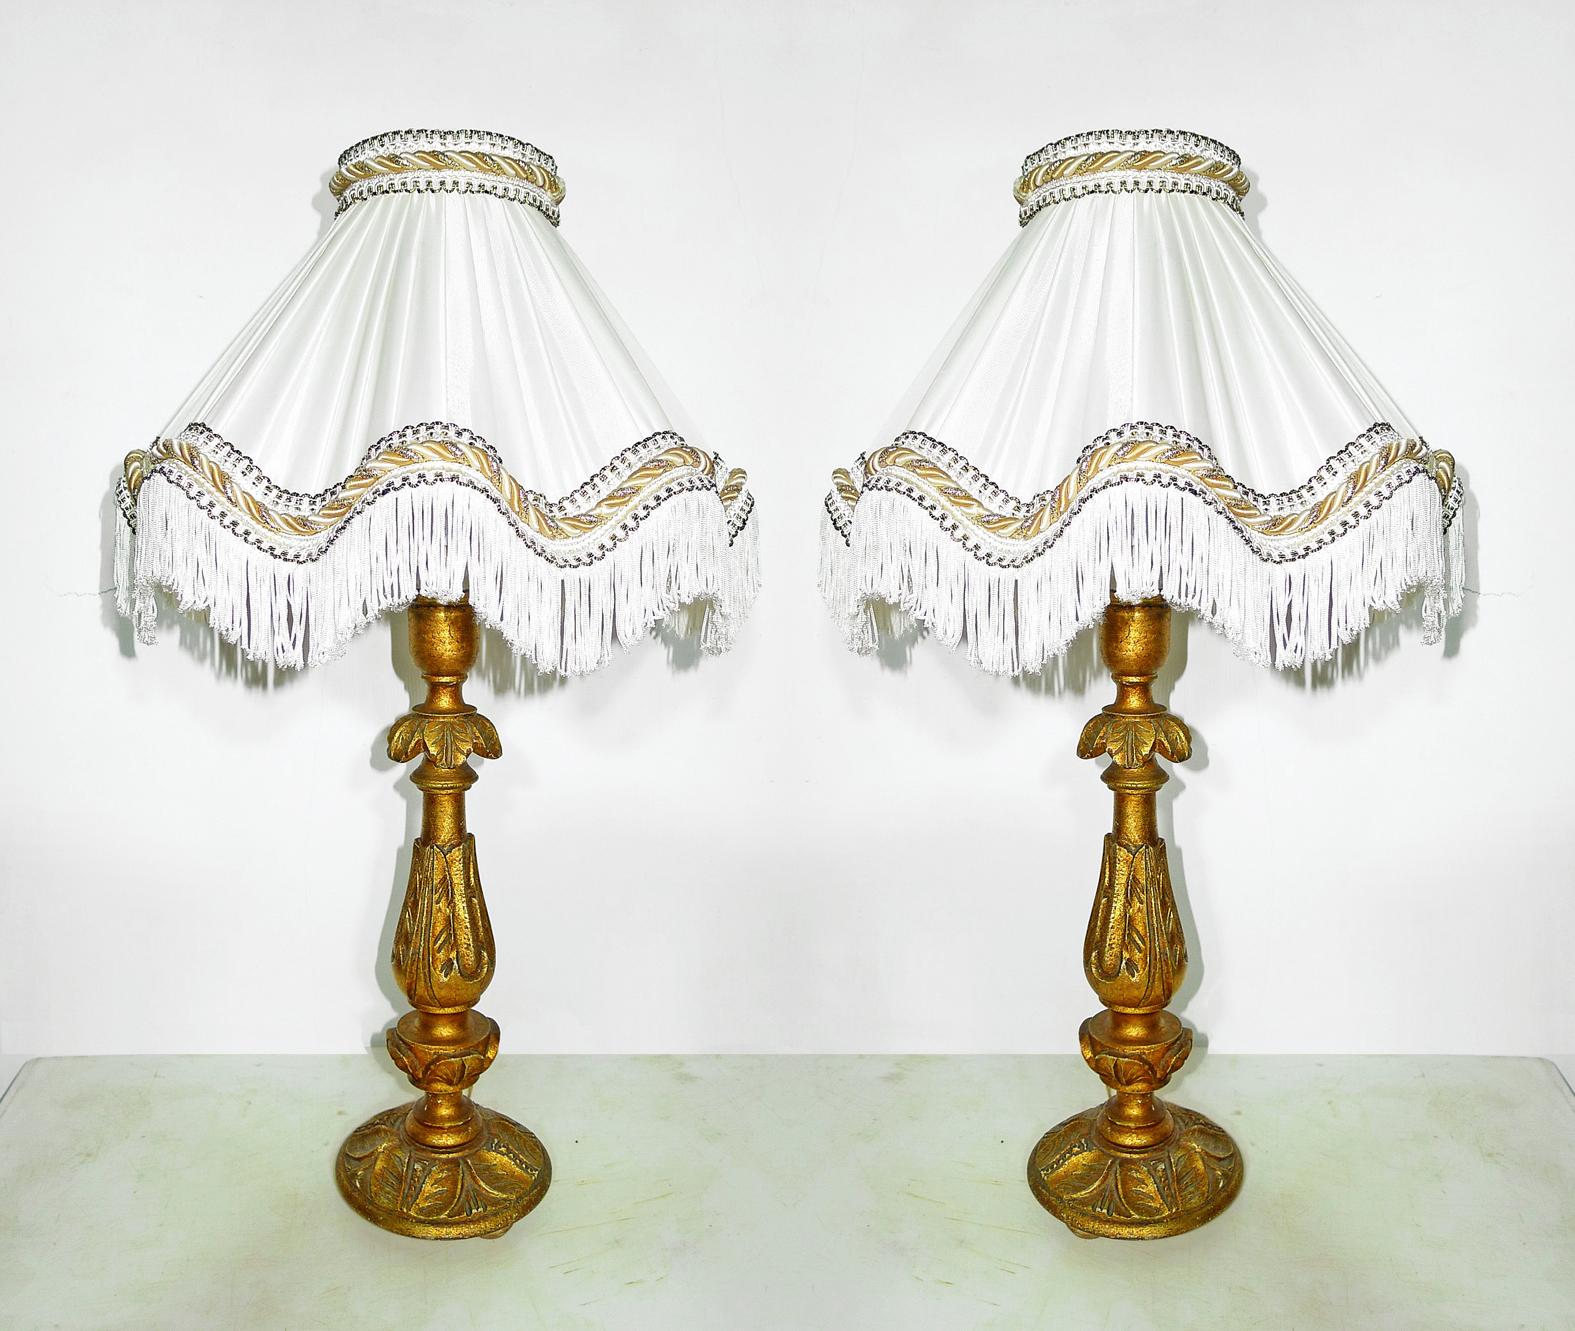 Paar elegante italienische barocke geschnitzte Goldholz-Kerzenleuchter, die zu Tischlampen umfunktioniert wurden, mit elfenbeinfarbenen Seidenschirmen
Maßnahmen:
Höhe 24 in /60 cm
Durchmesser 14 in /36 cm
Gewicht 2,5 kg / 5 lb
Gehäuse für je